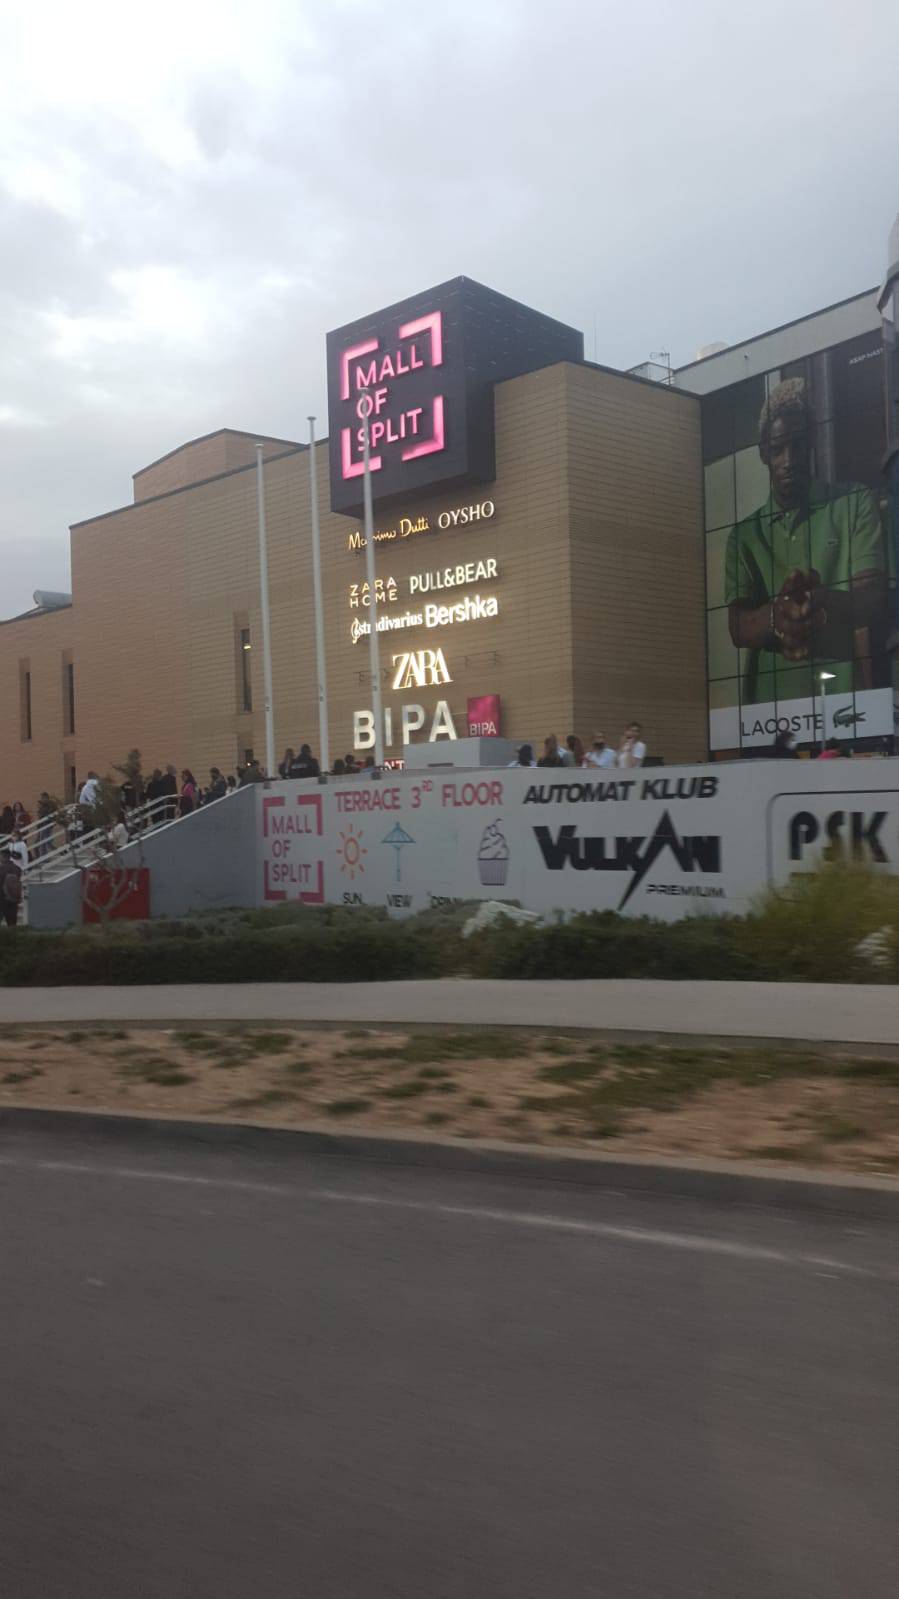 Panika u centru 'Mall of Split': Upalio se protupožarni alarm, ali je ipak bila lažna uzbuna